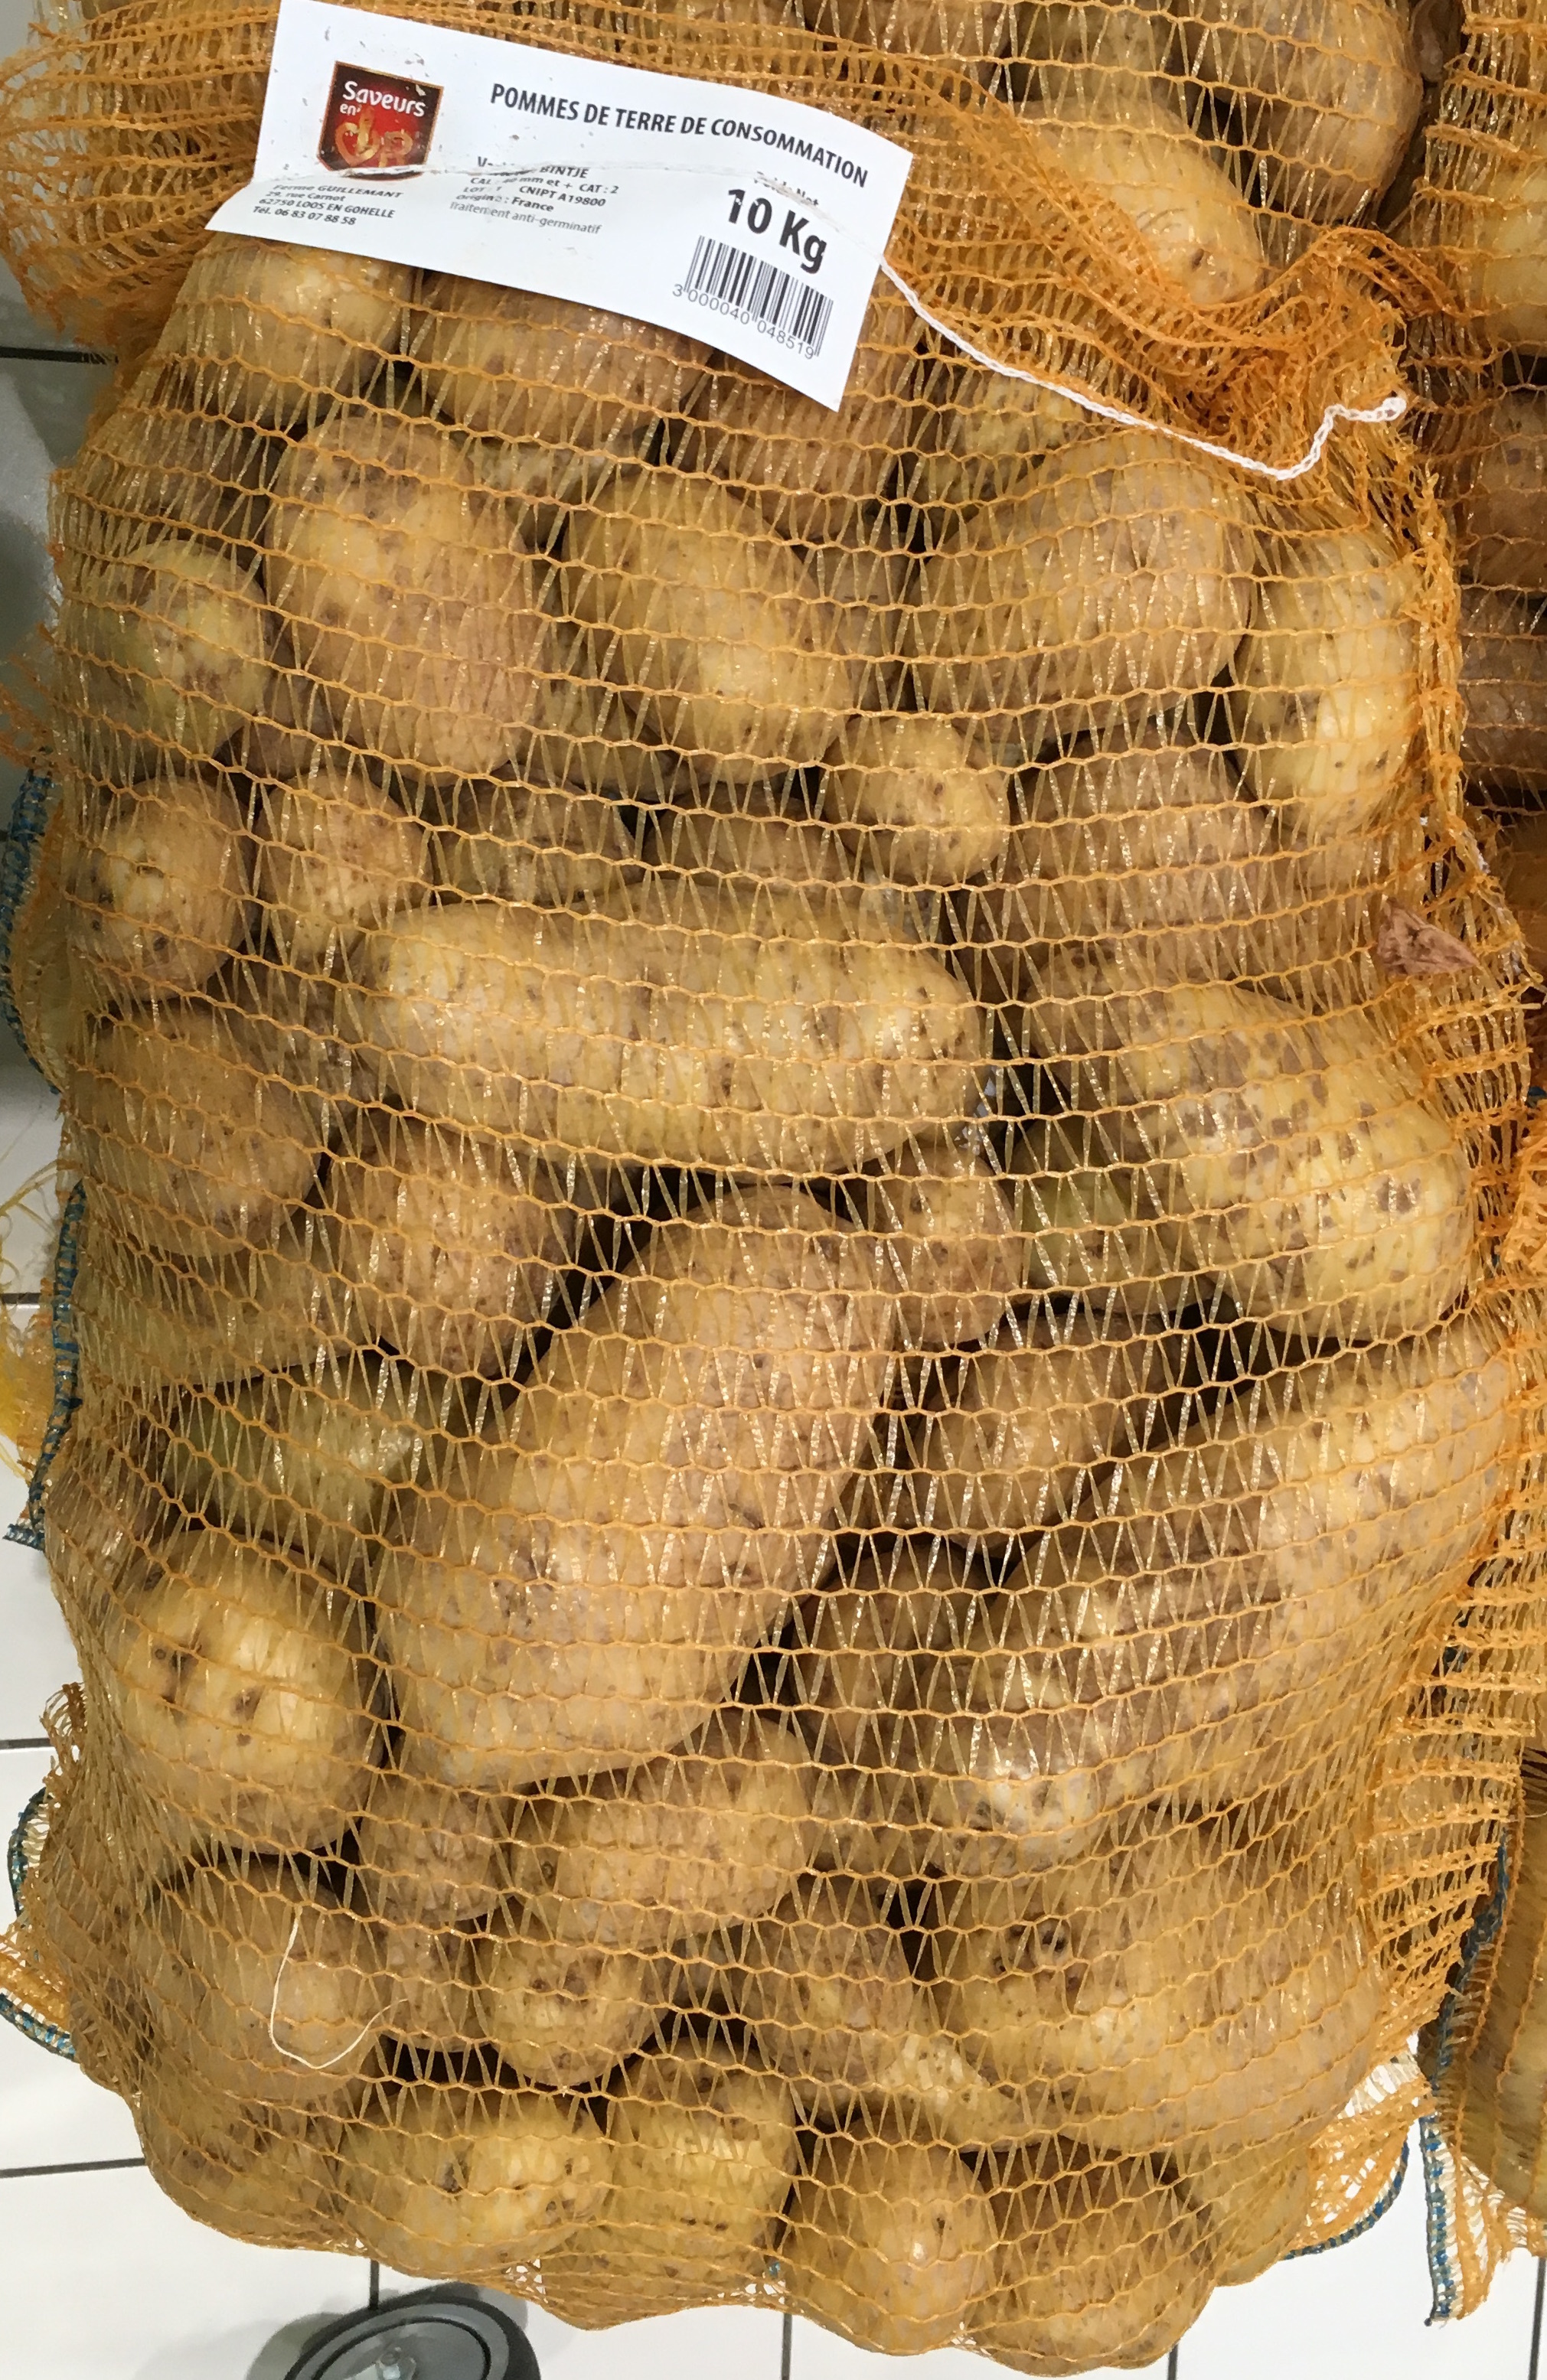 Pommes de terre de consommation - Produkt - fr